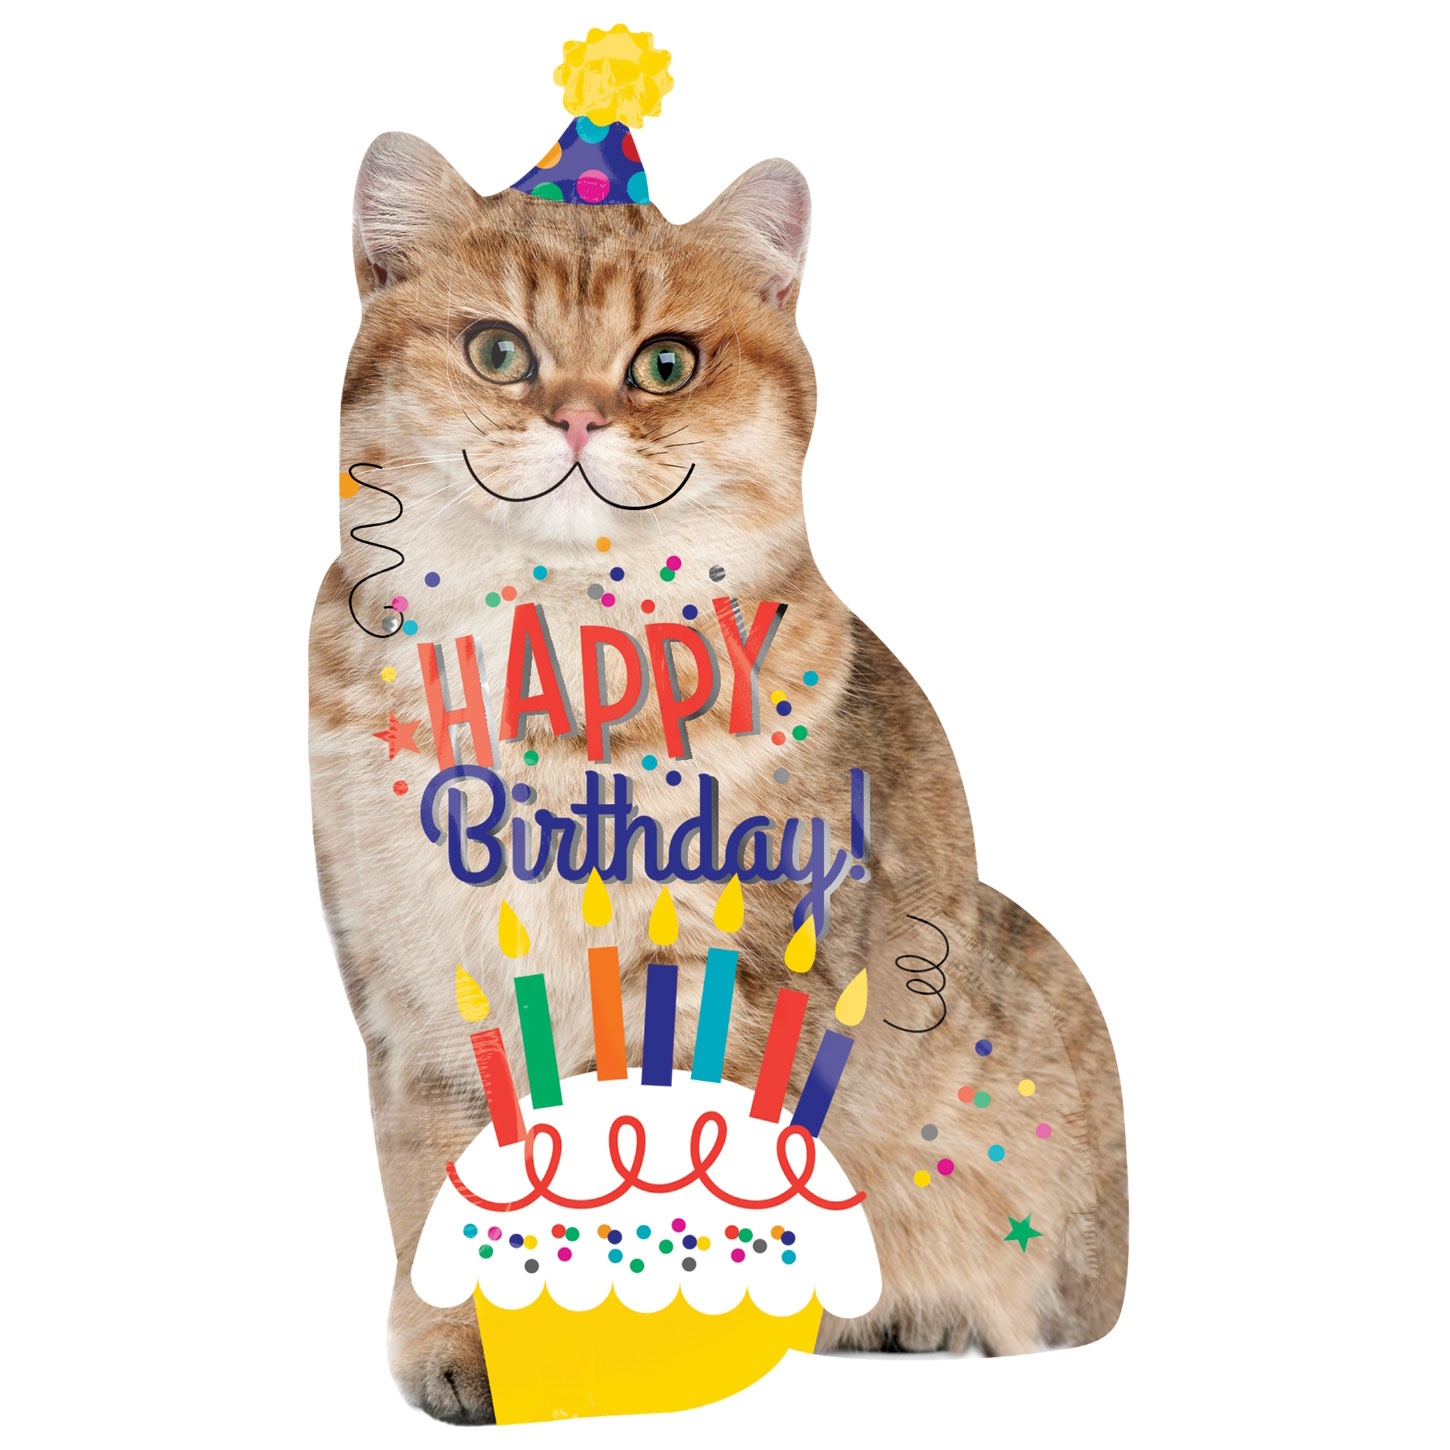 BIRTHDAY SHAPED BALLOONS : Happy Birthday Cat